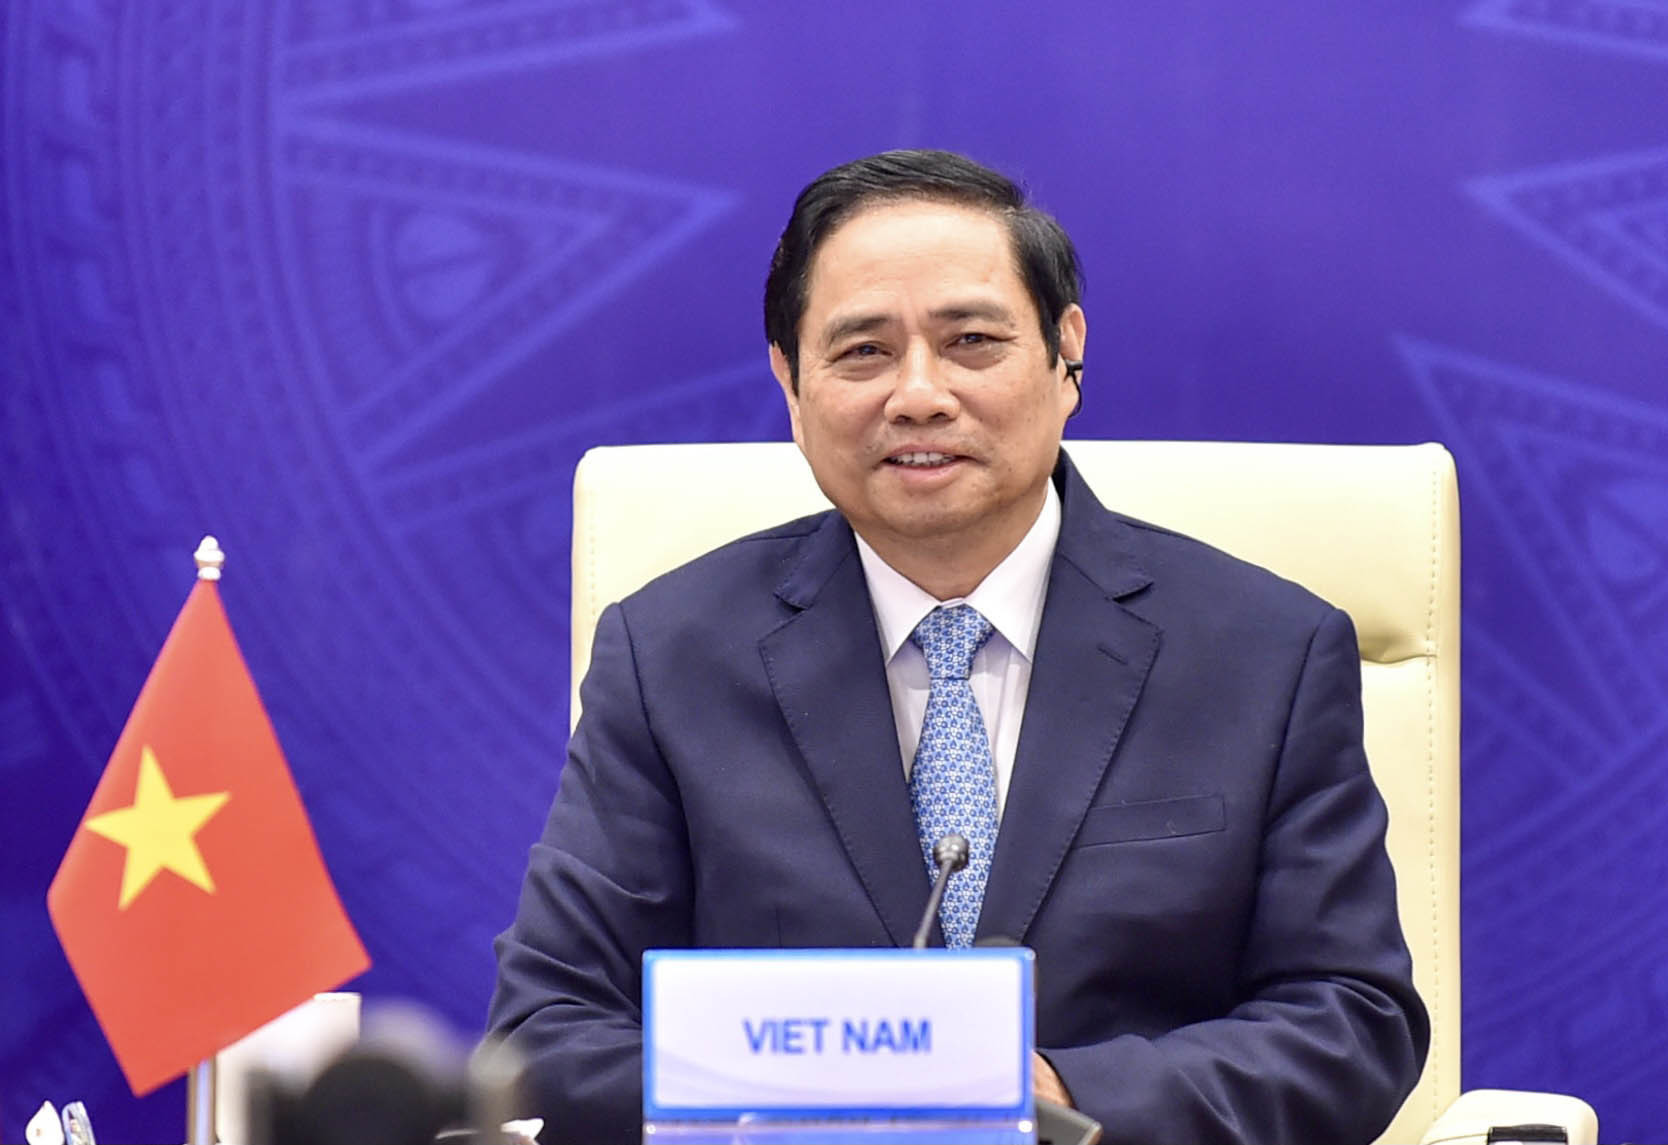 Phát biểu của Thủ tướng tại Hội nghị thượng đỉnh hợp tác Tiểu vùng Mekong mở rộng